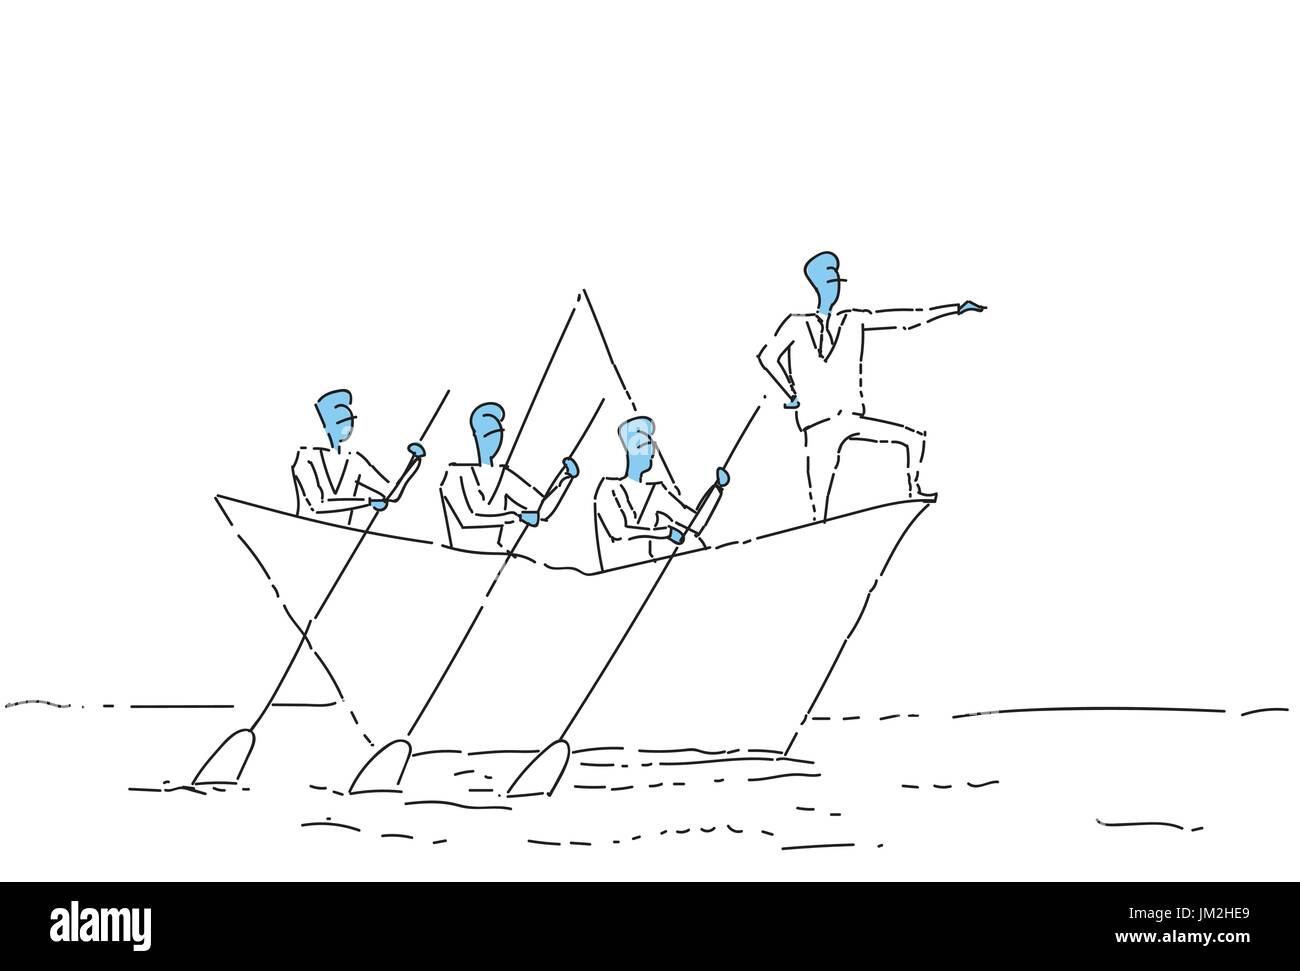 Geschäftsmann führenden Geschäftsleuten Team schwimmen In Papier Boot Teamwork Leadership-Konzept Stock Vektor